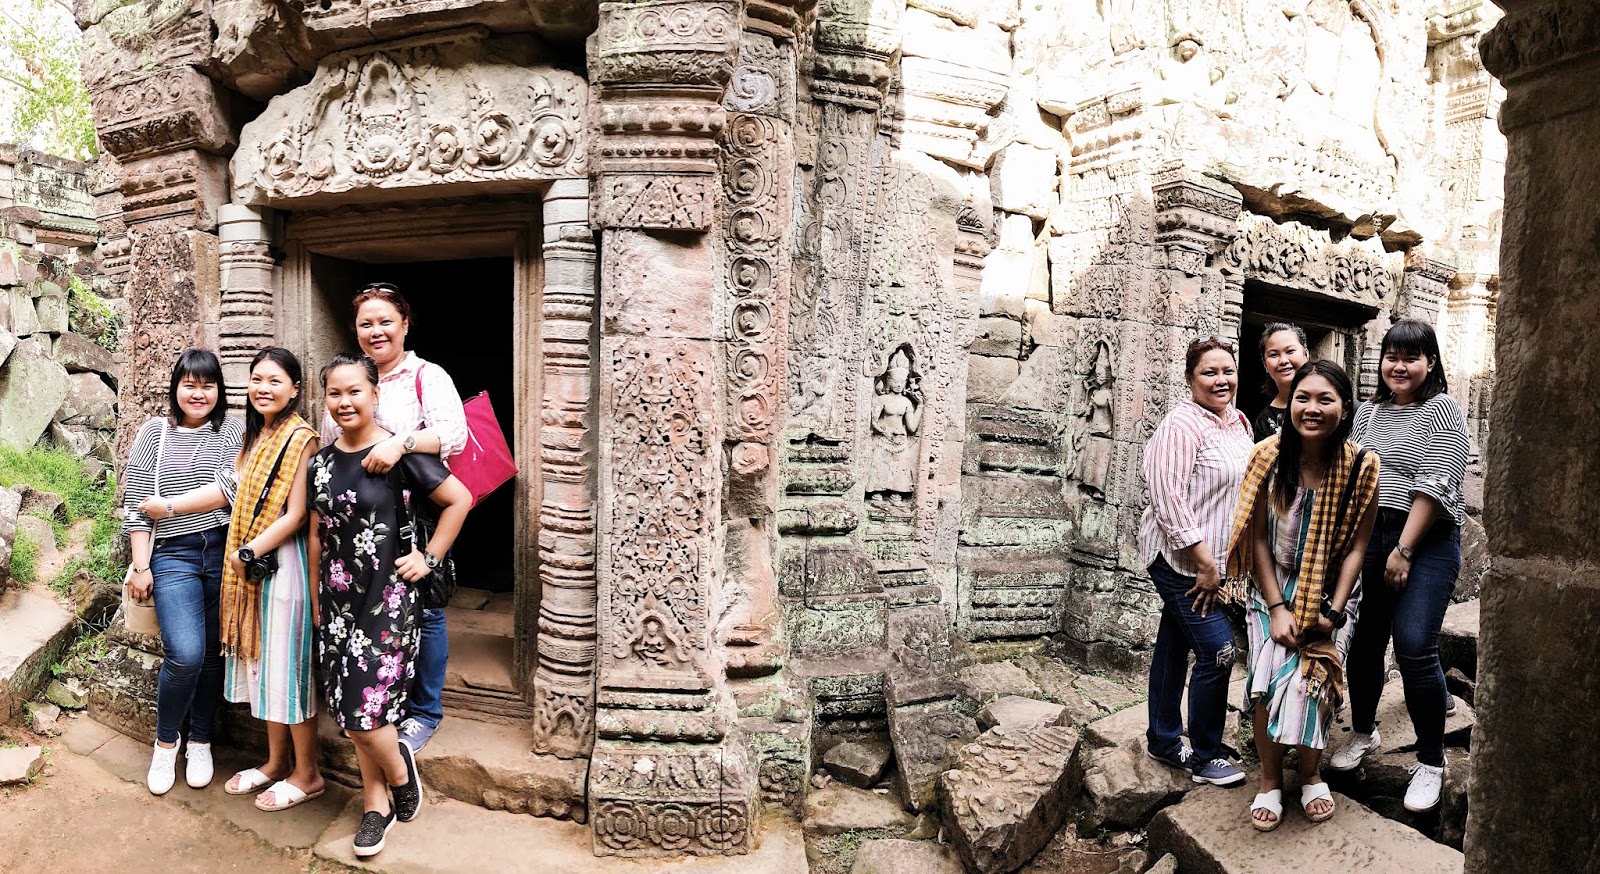 The squad inside Preah Khan Temple